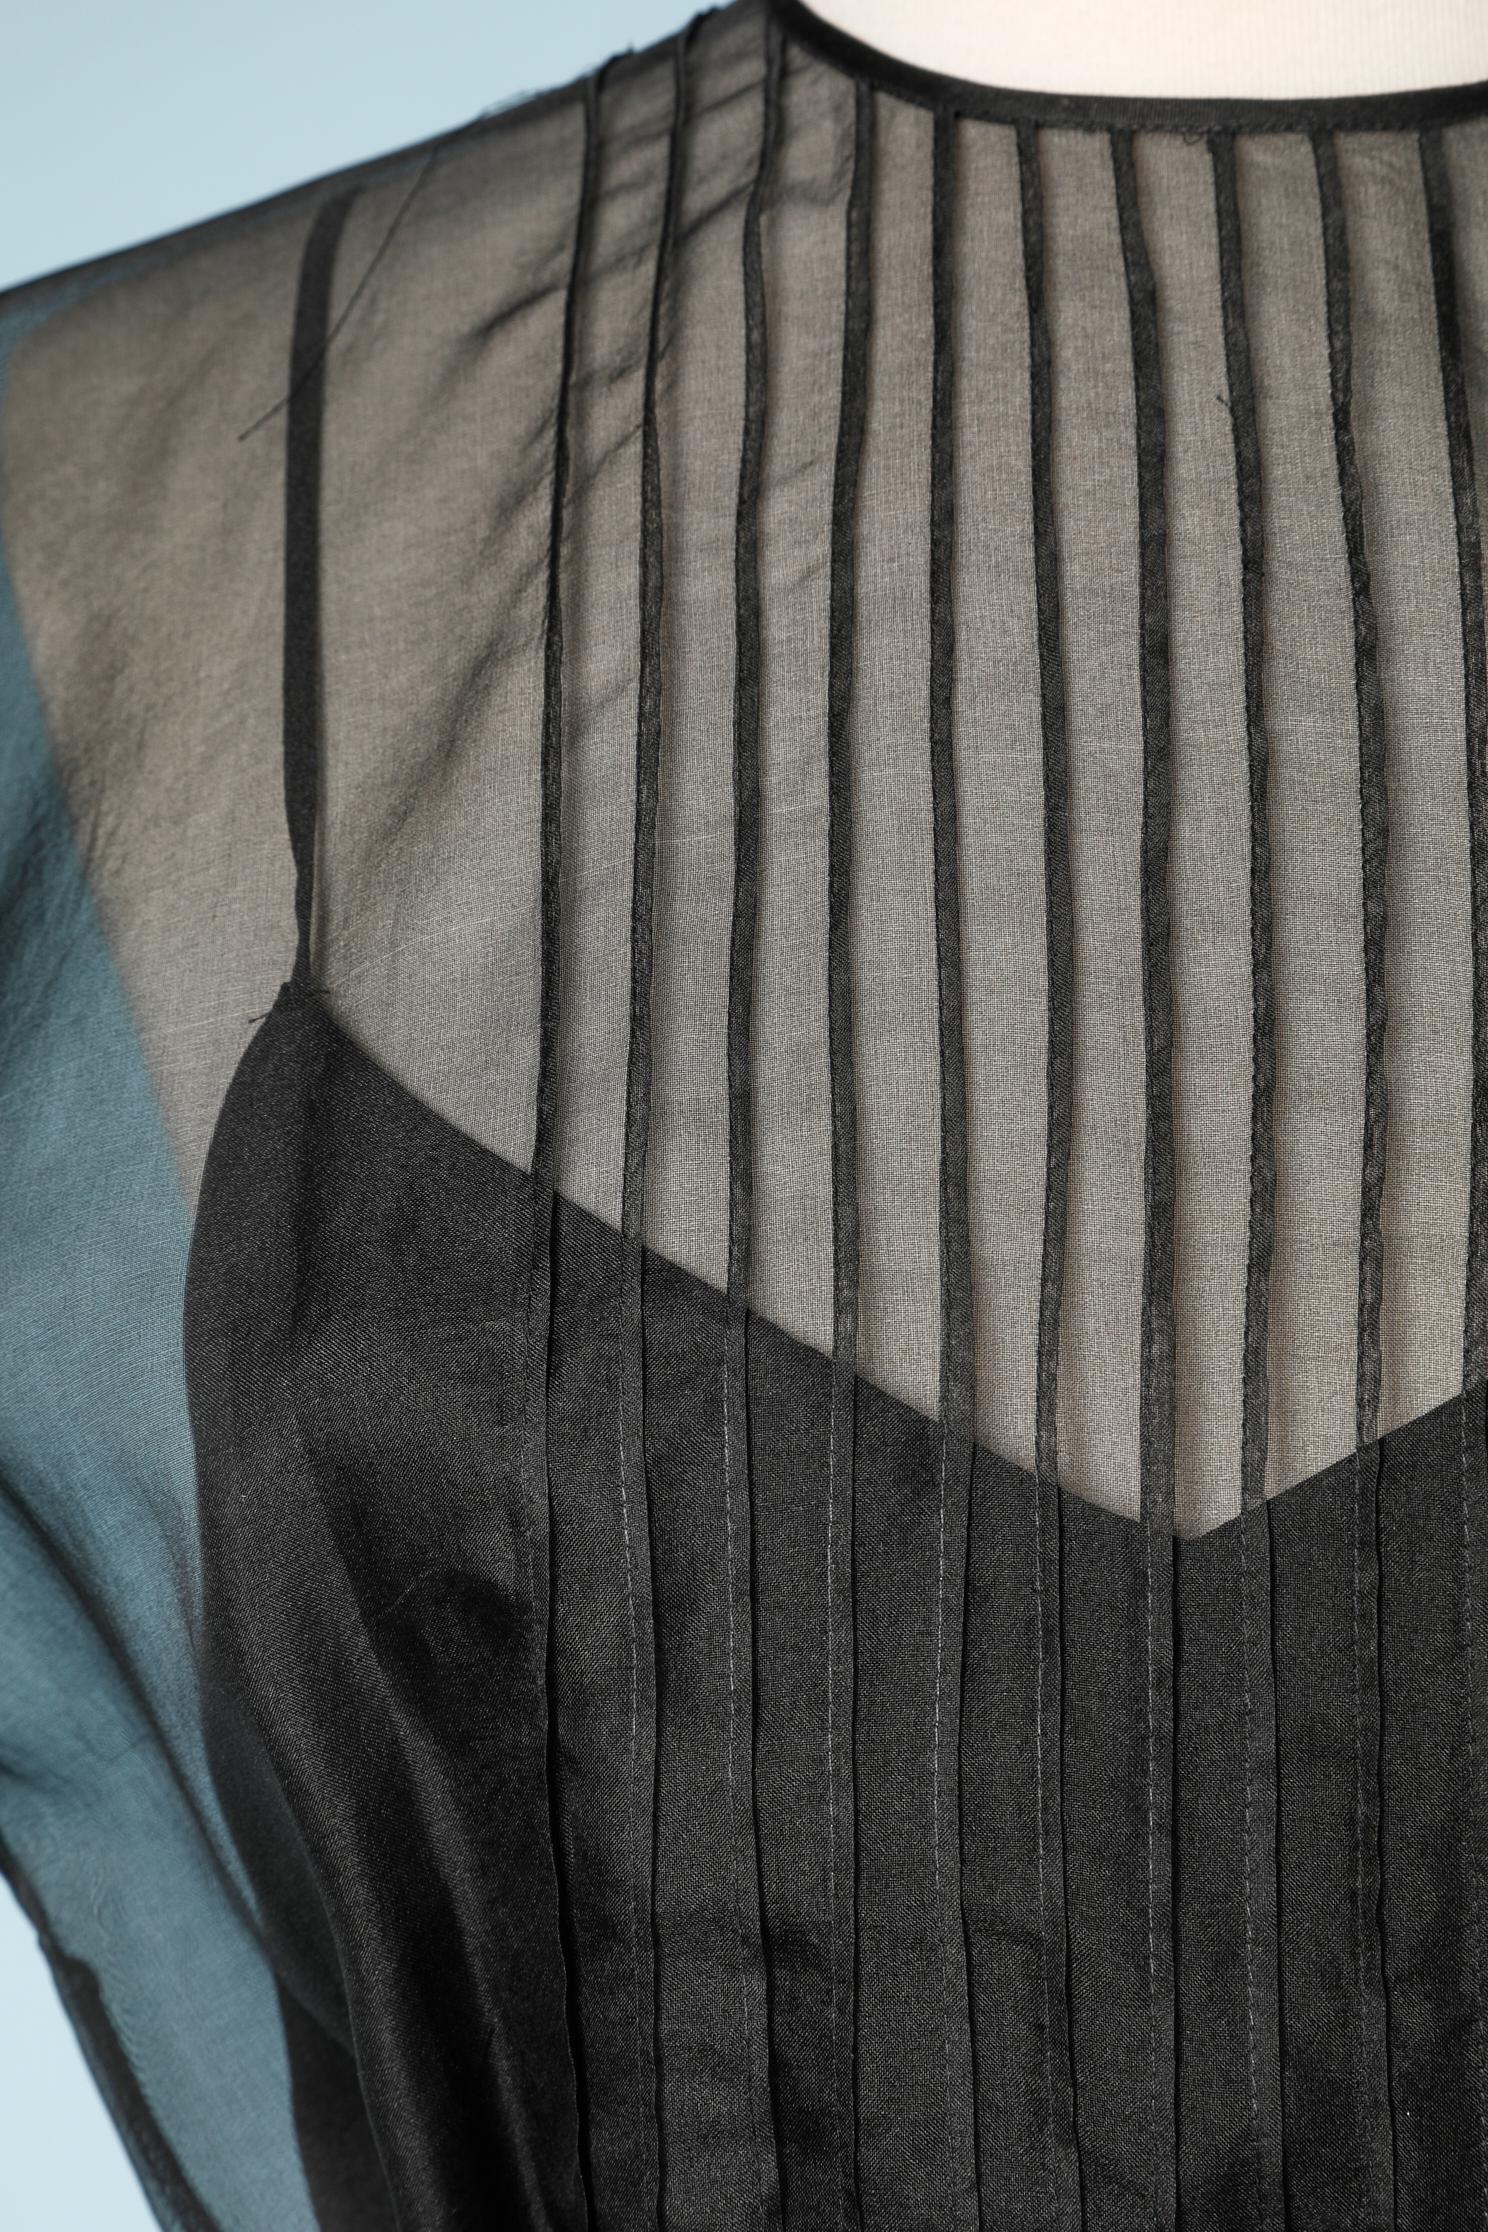 Black chiffon organza and silk dress with belt.
SIZE 10 (Us) 